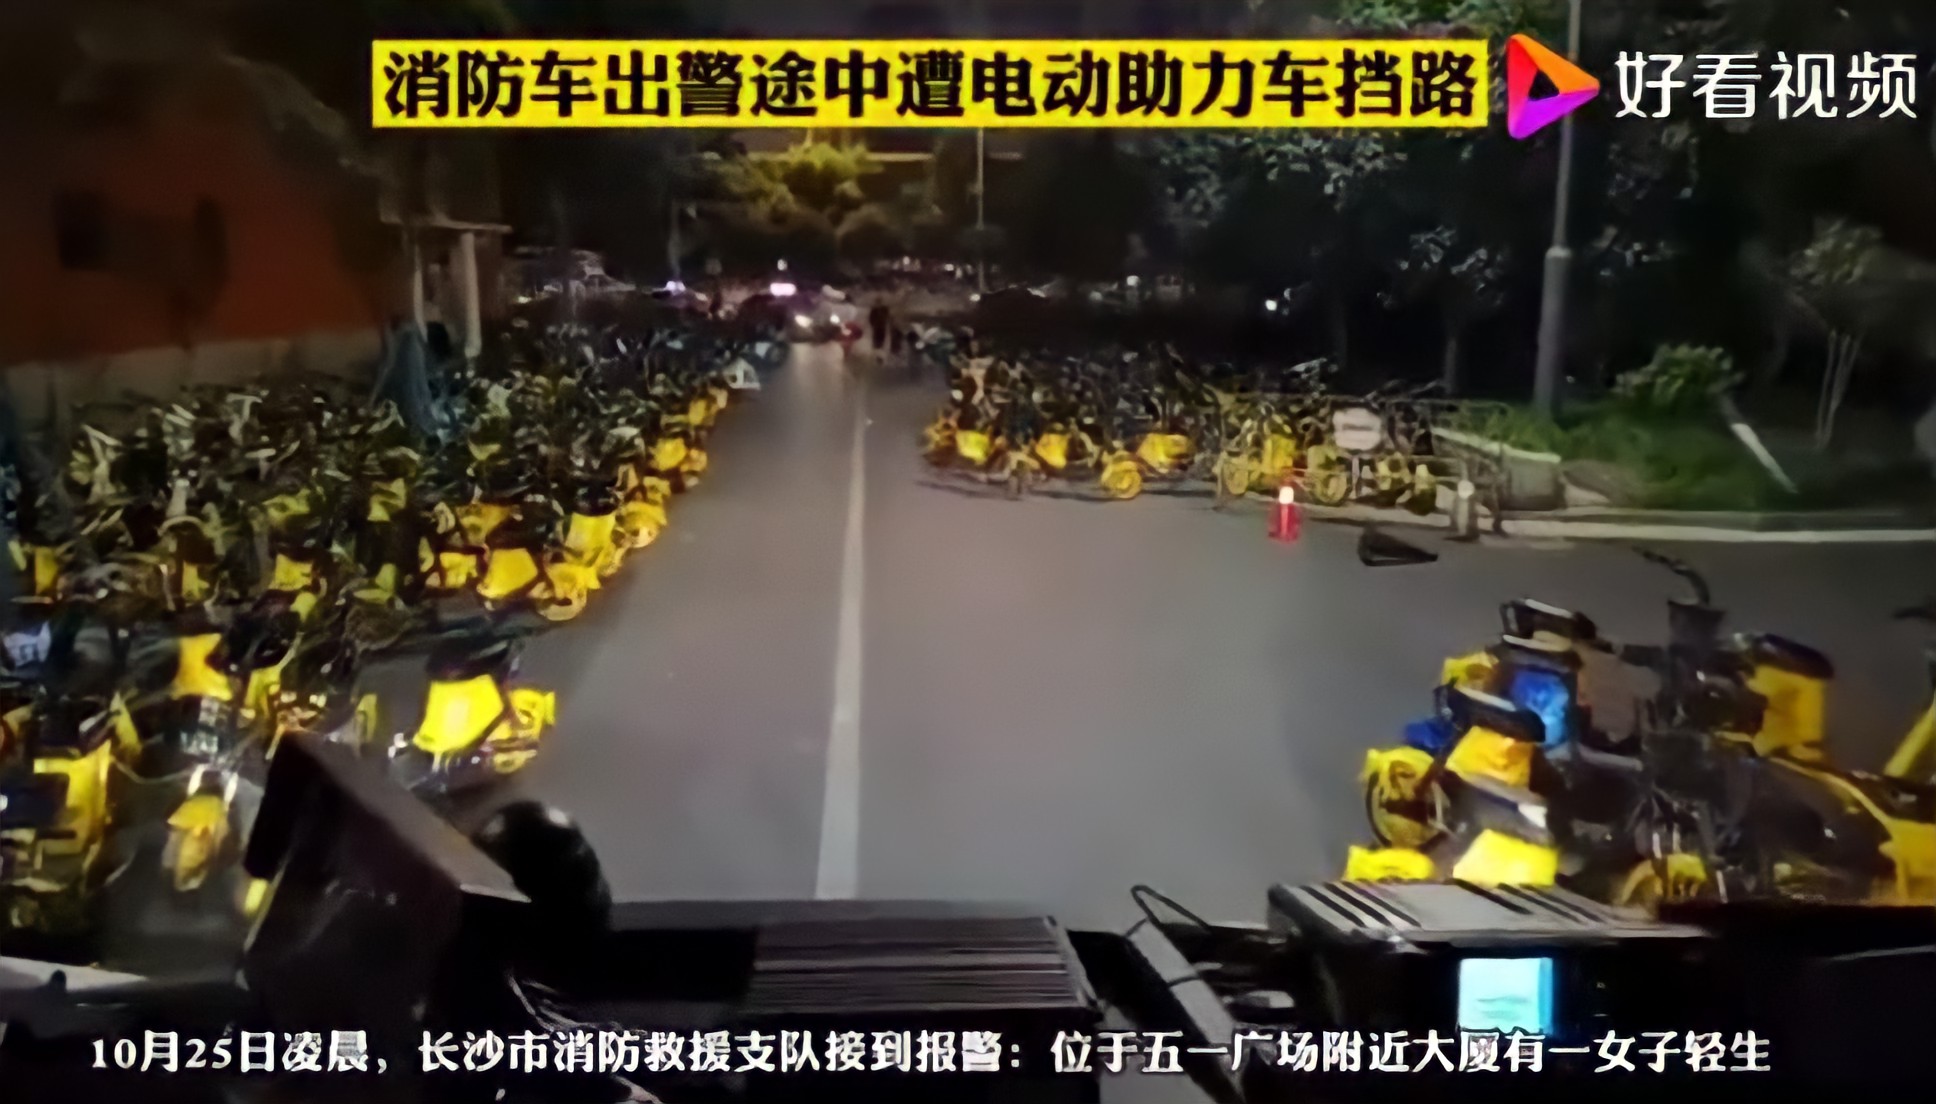 Hoa mắt chóng mặt với nghĩa trang xe thây ma ở Trung Quốc: Hơn 500 nghìn chiếc xe máy điện chơ vơ giữa lòng thành phố - Ảnh 2.